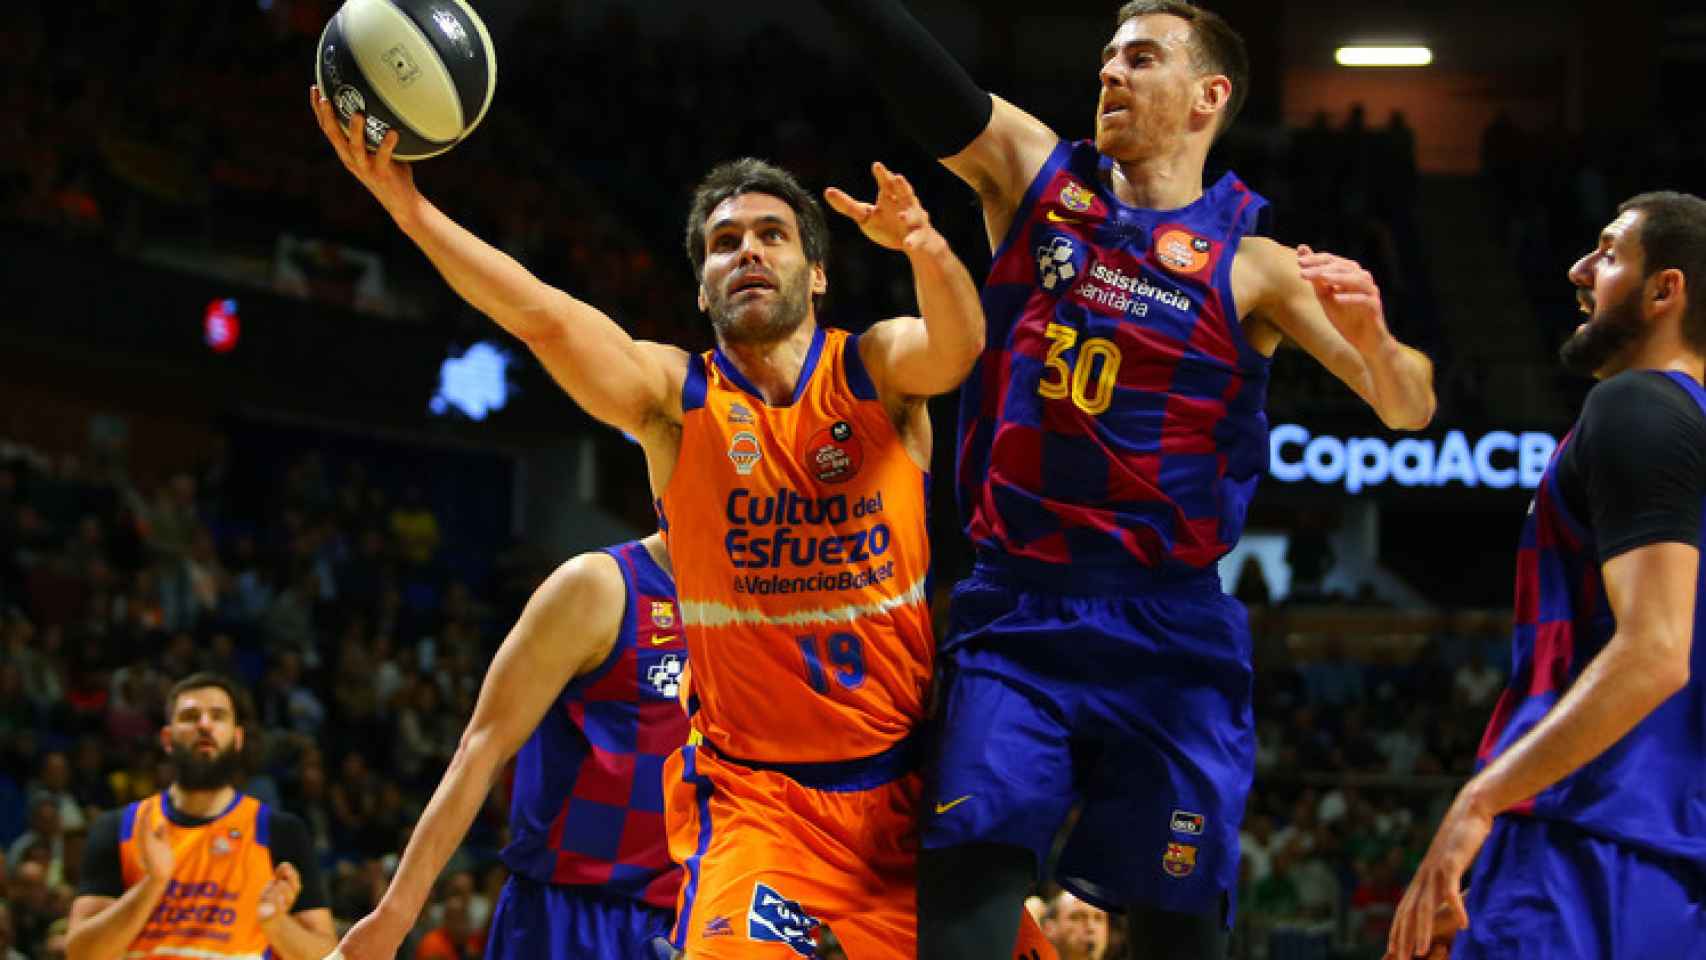 San Emeterio y Claver, durante el partido de Copa del Rey entre Barcelona y Valencia Basket